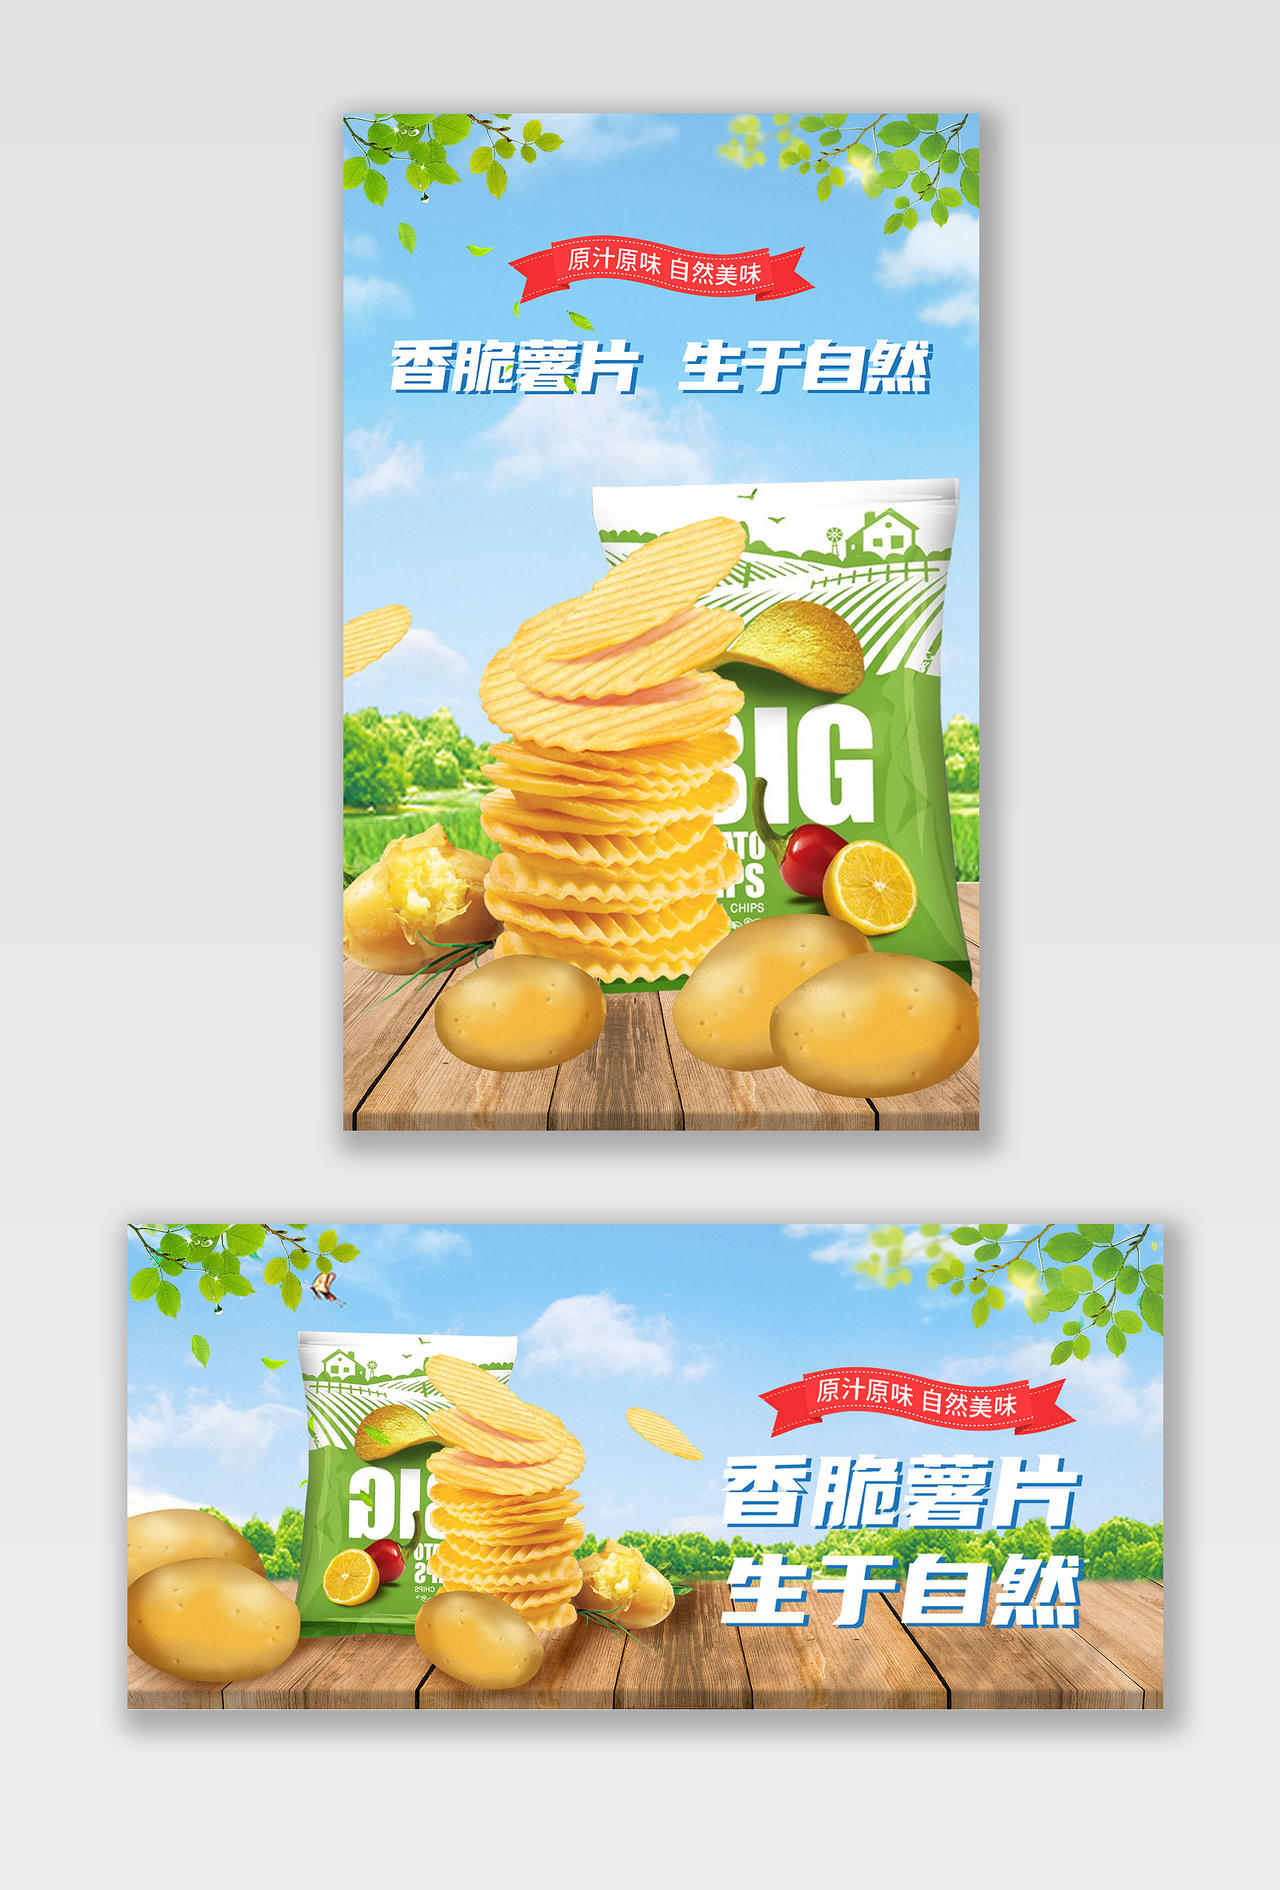 蓝天白云清新自然风薯片零食817吃货节海报banner